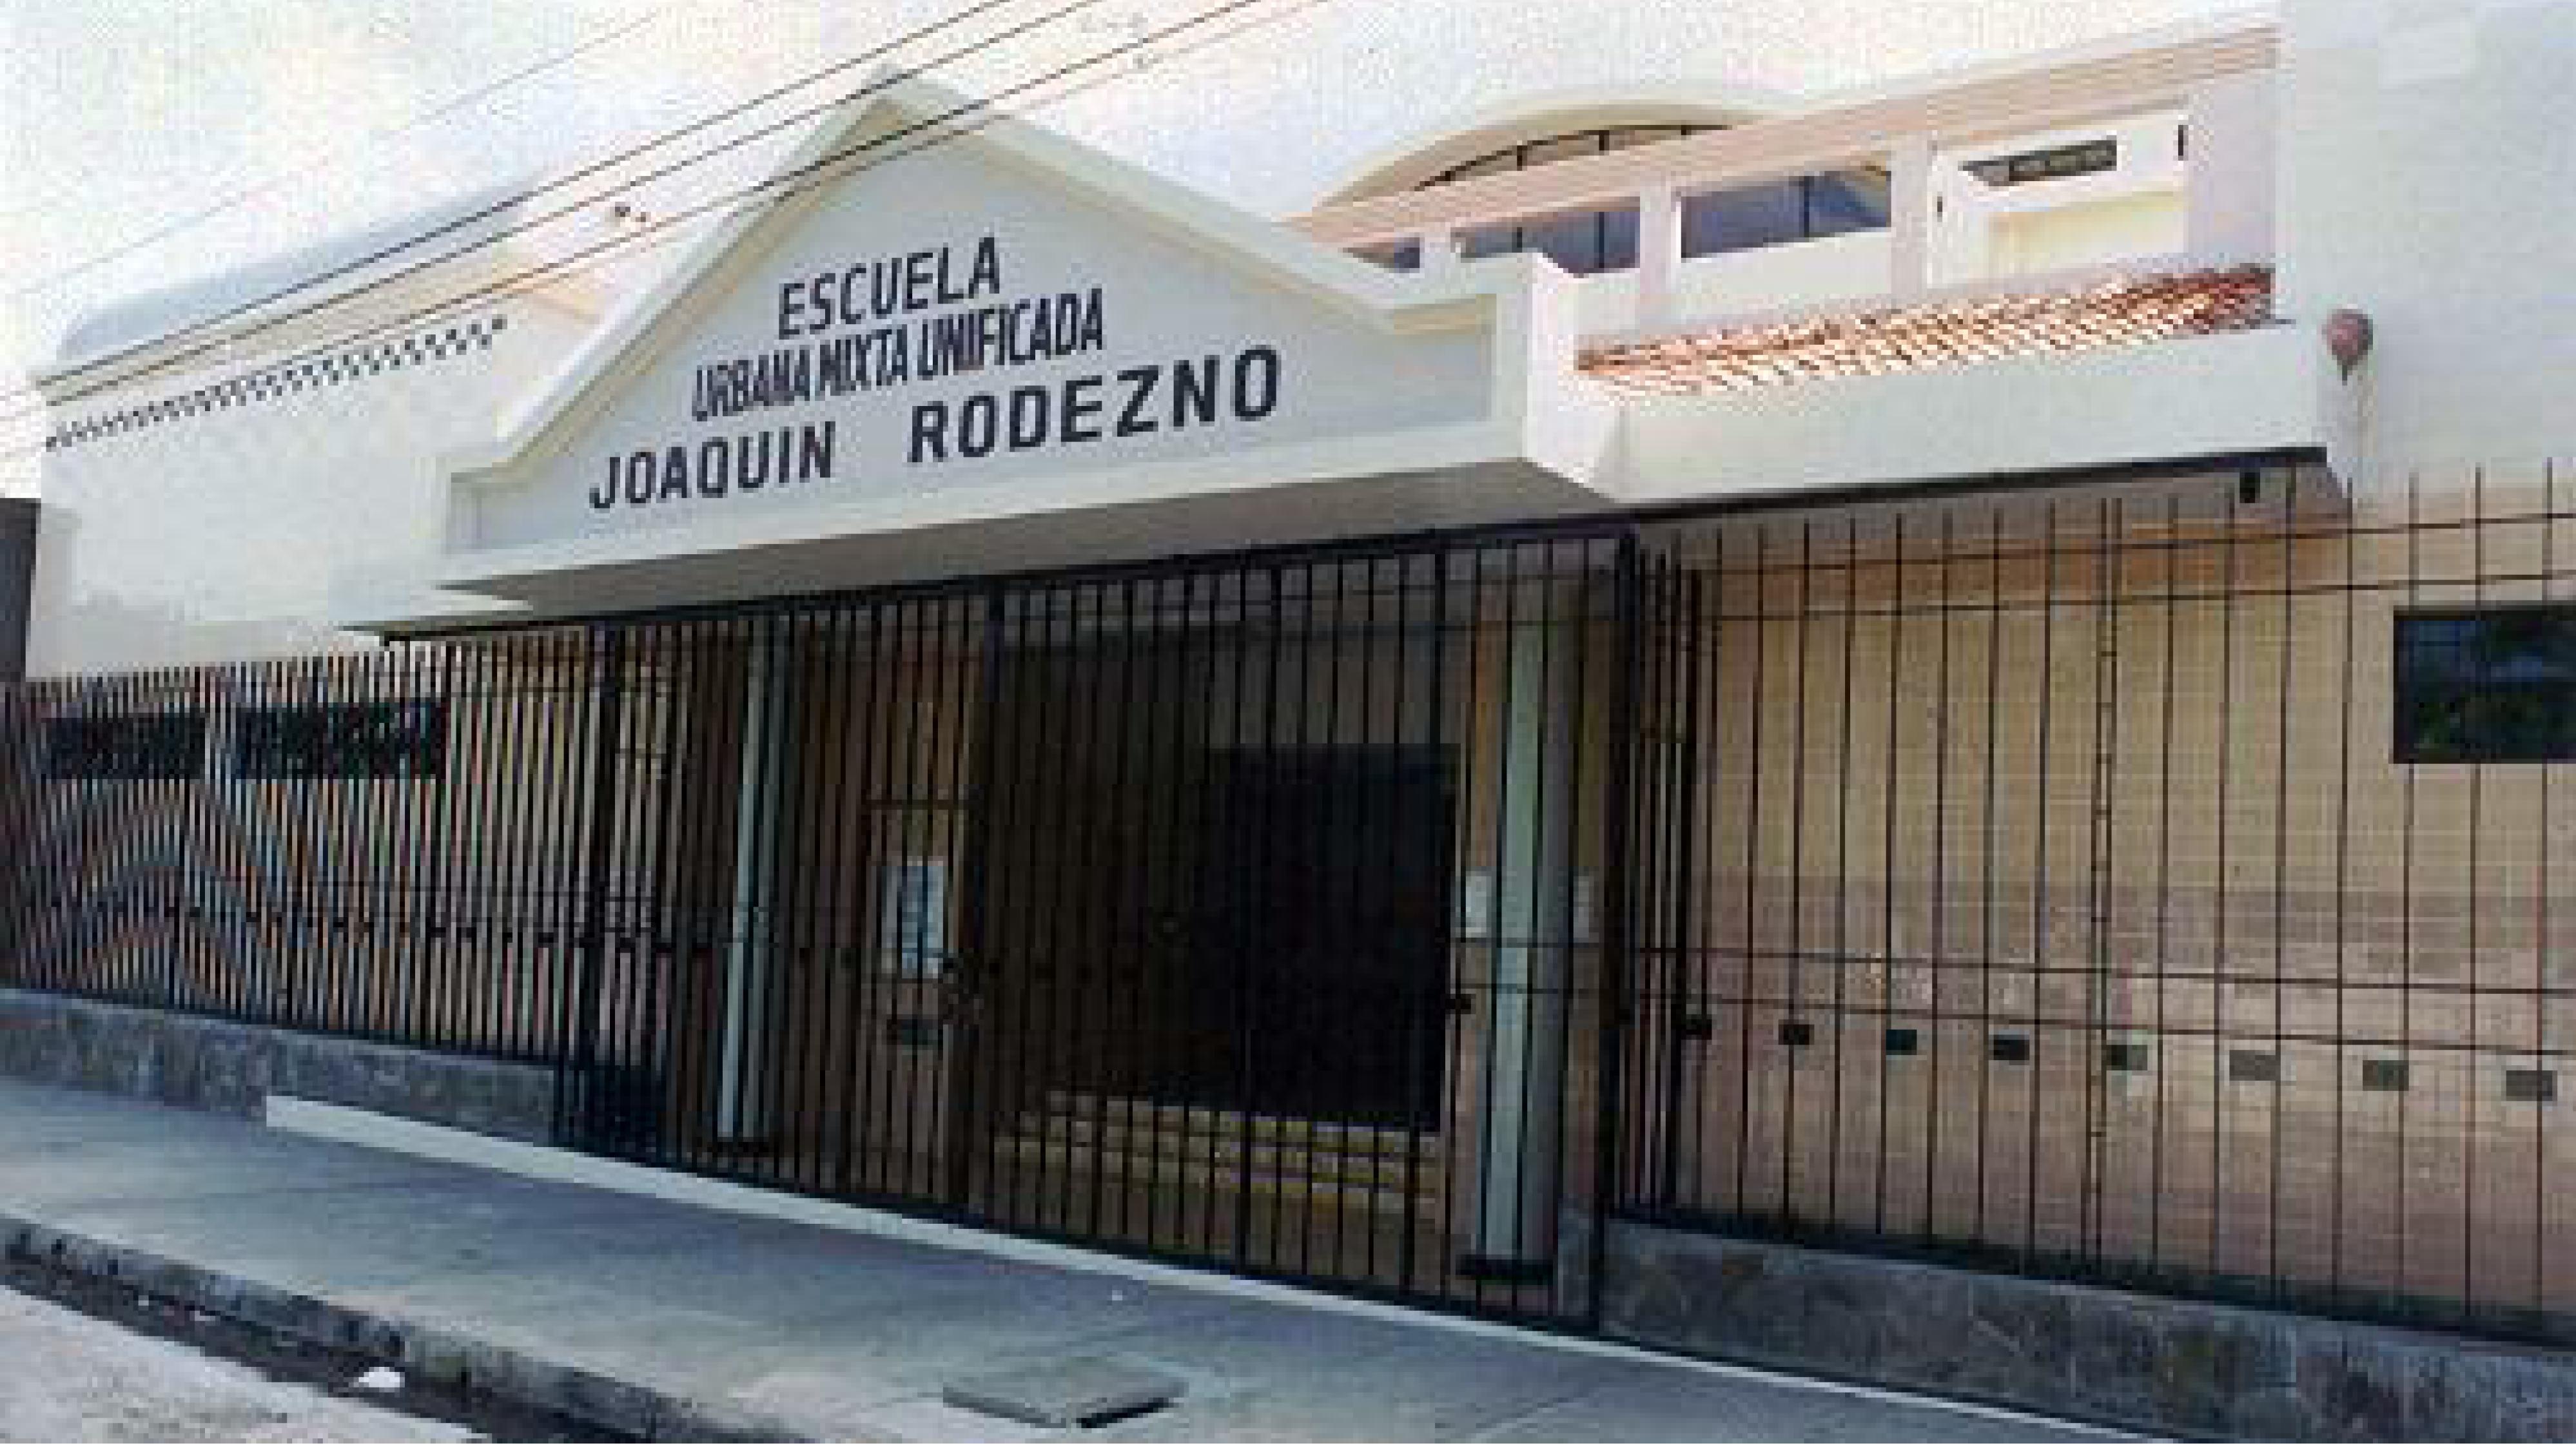 Escuela Joaquín Rodezno